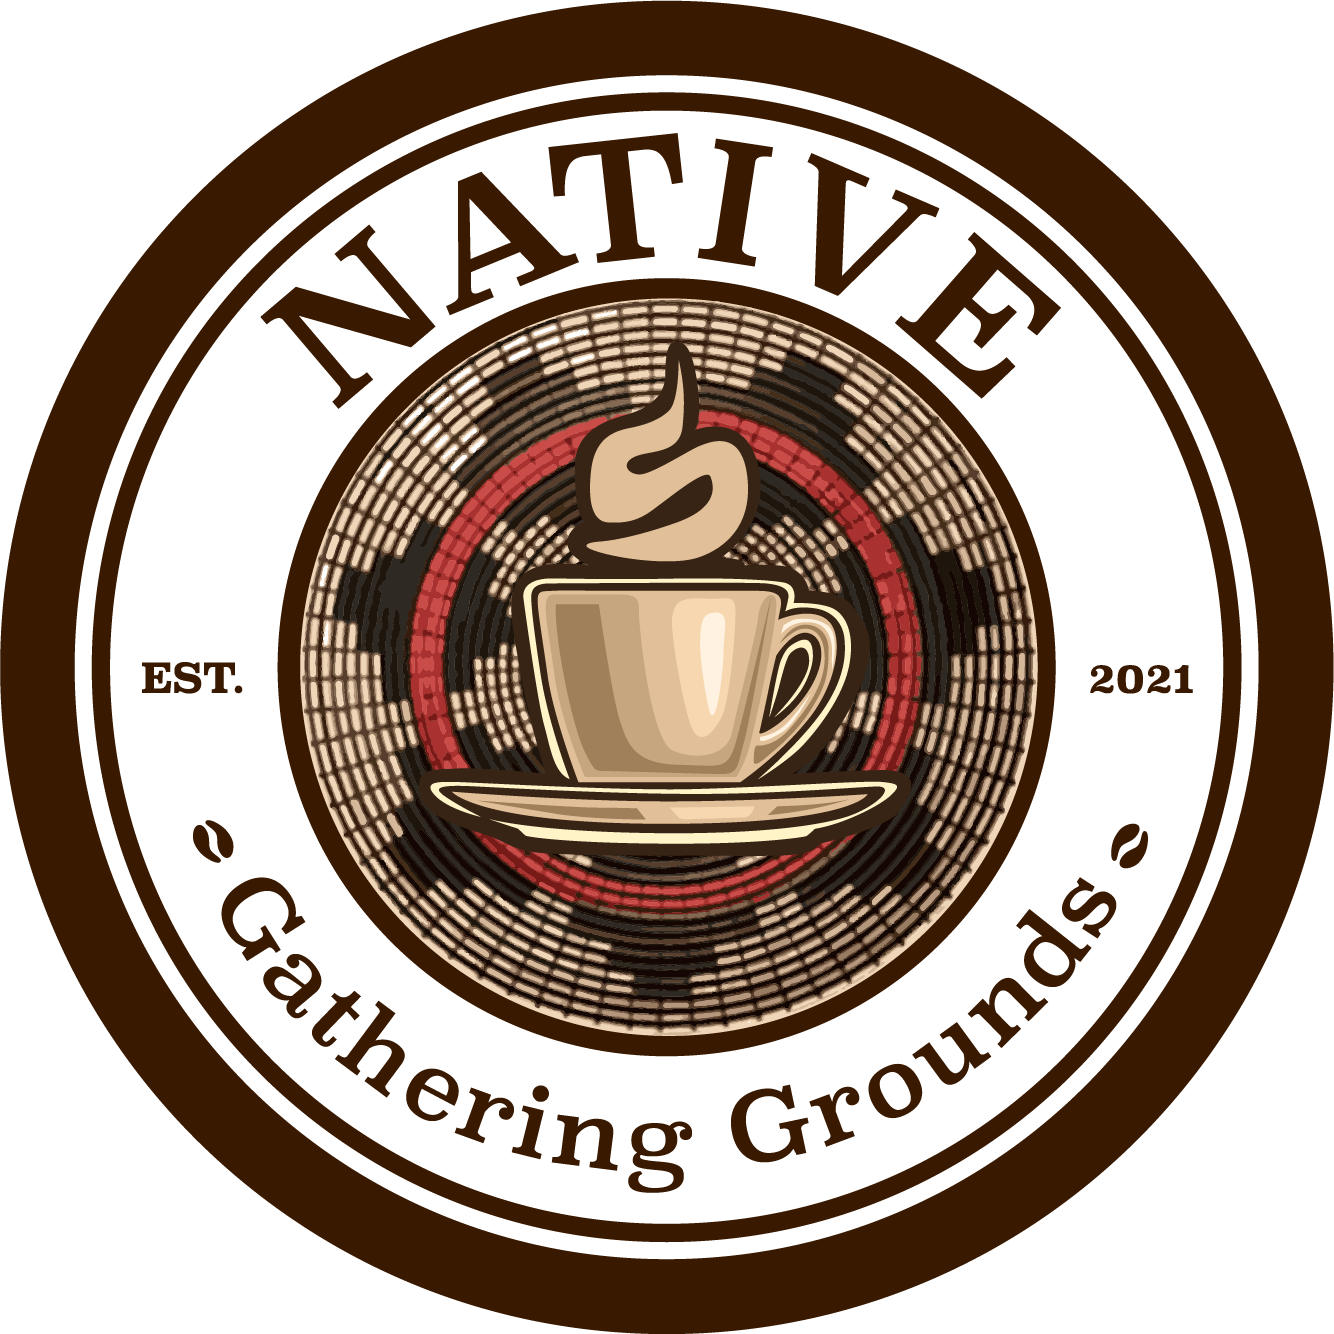 Native Gathering Grounds logo